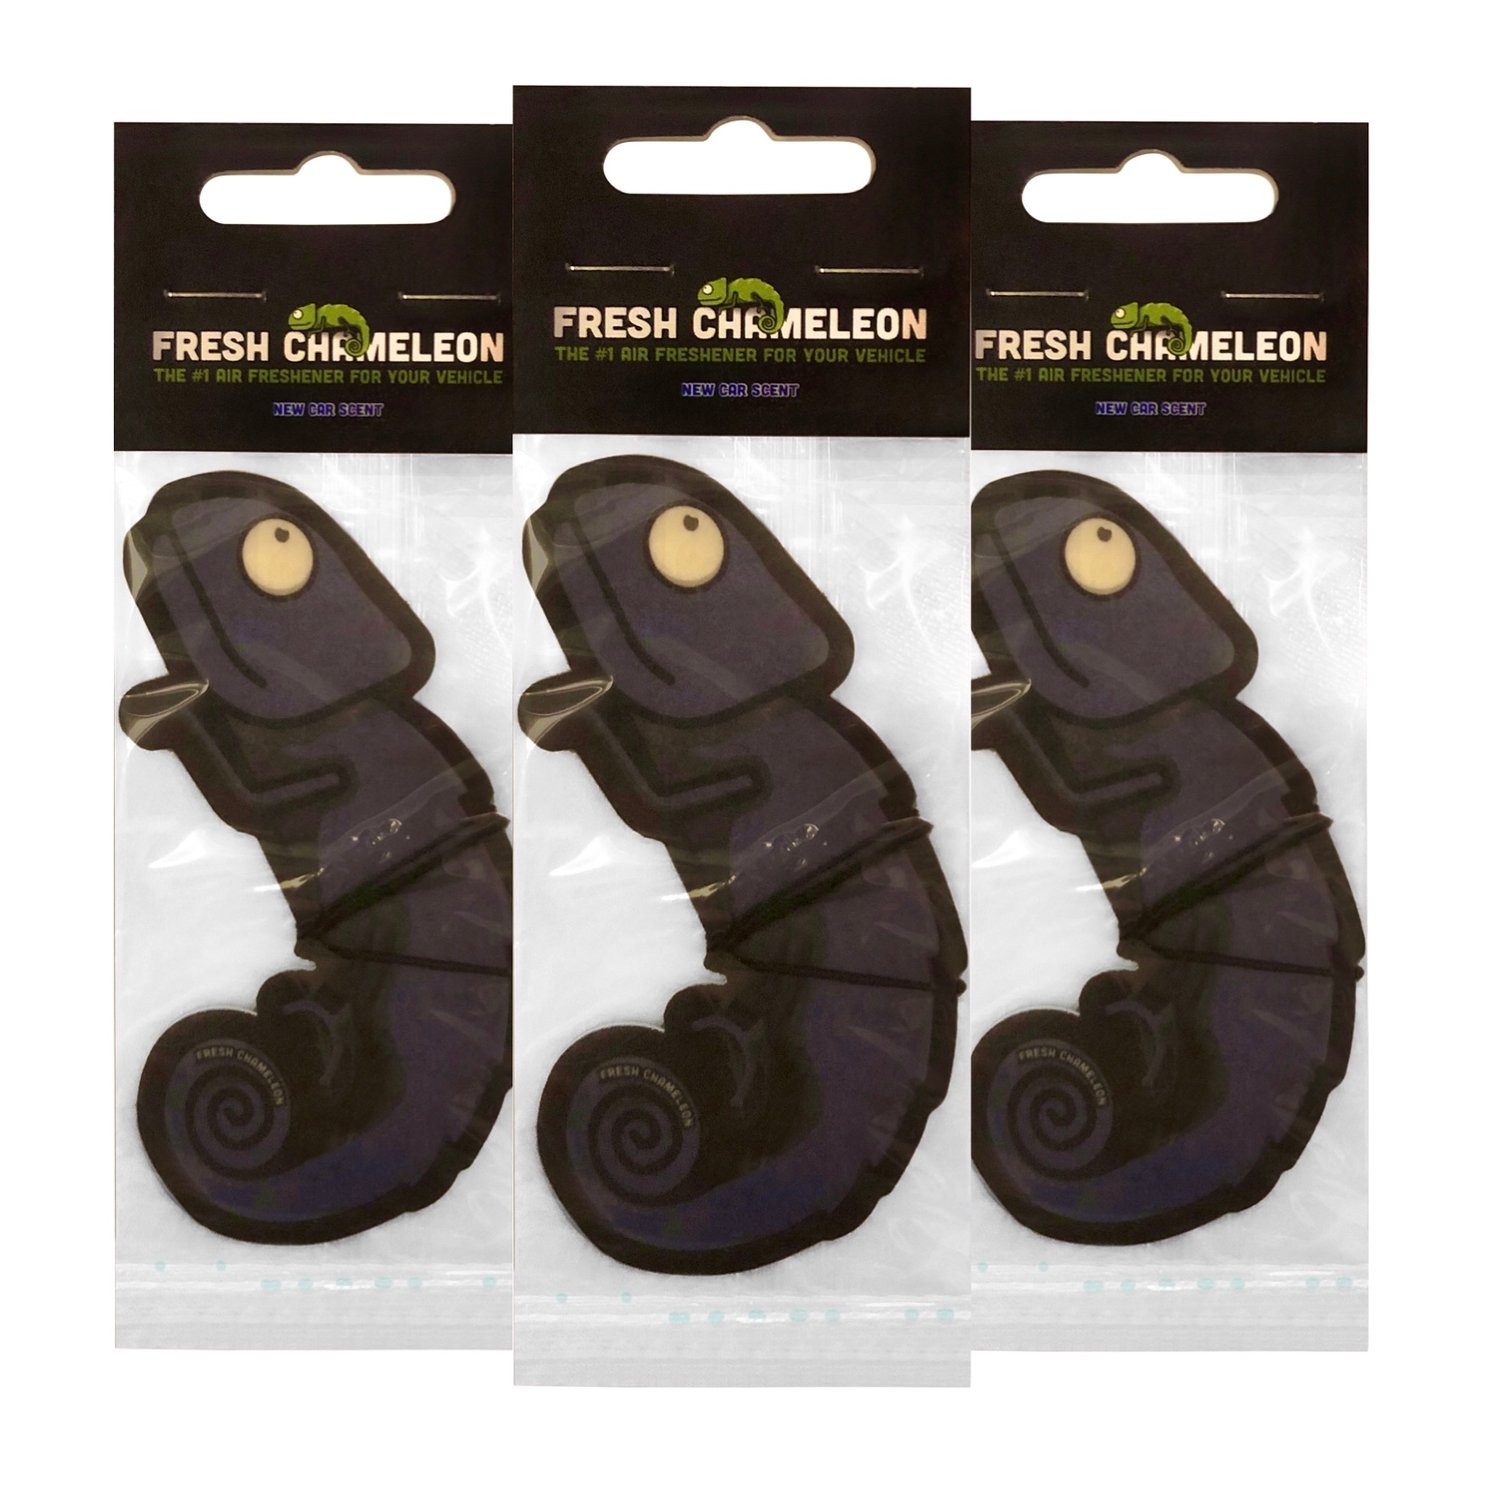 Fresh Chameleon 2D Car Air Freshener (New Car Scent) Pack of 3